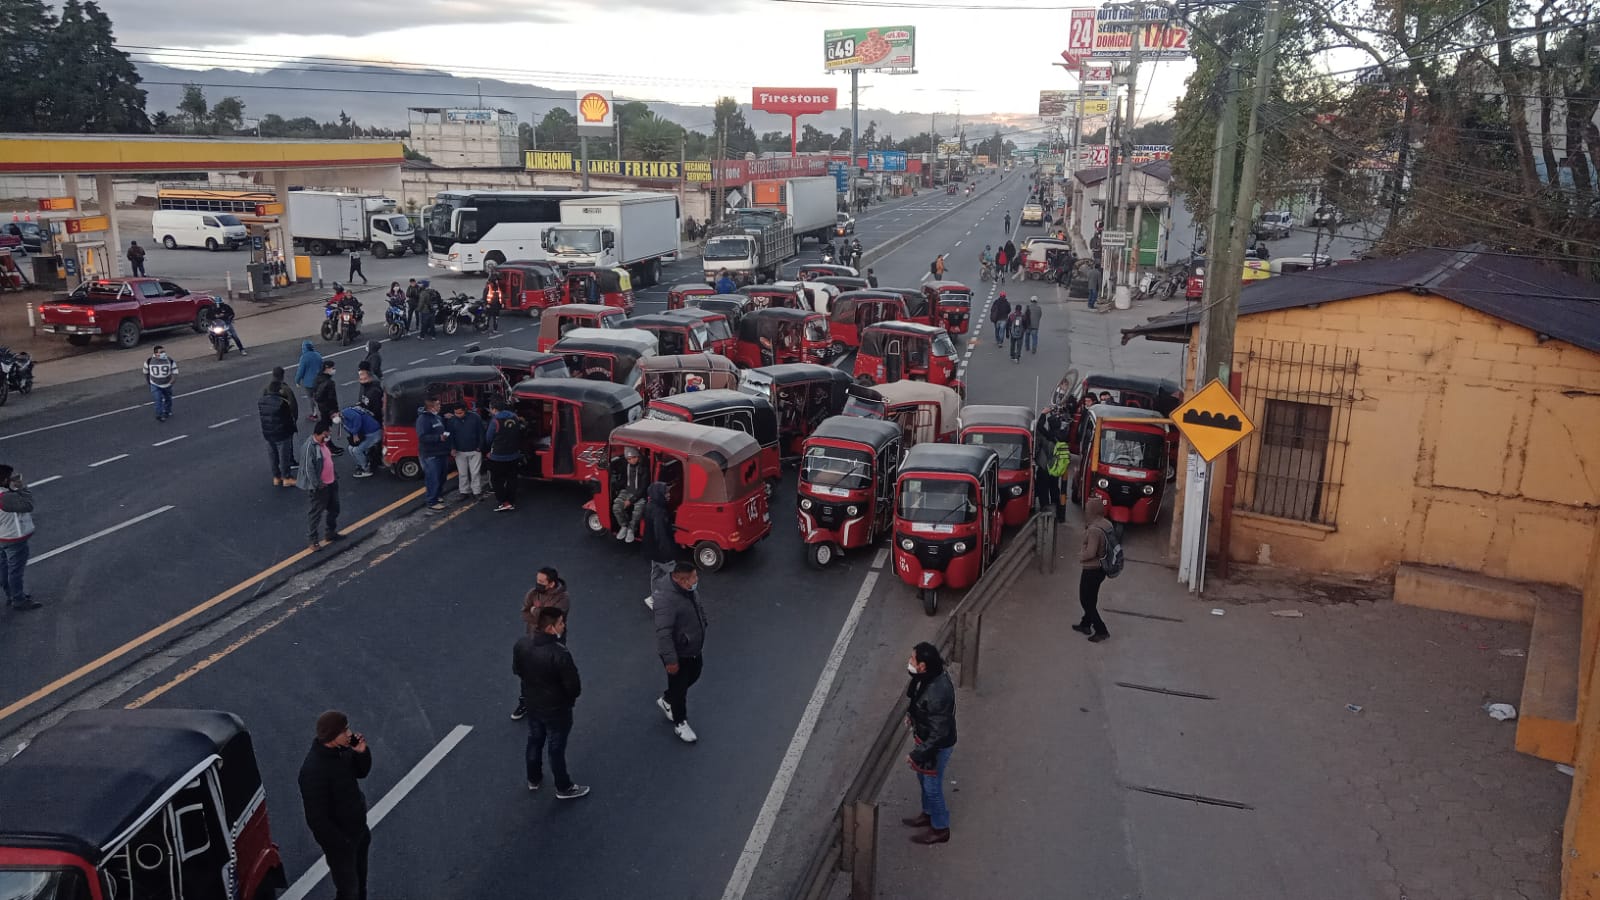 El kilómetro 49 de la ruta Interamericana, El Tejar, Chimaltenango, es uno de los puntos bloqueados por transportistas este lunes 24 de enero. (Foto Prensa Libre: Víctor Chamalé)